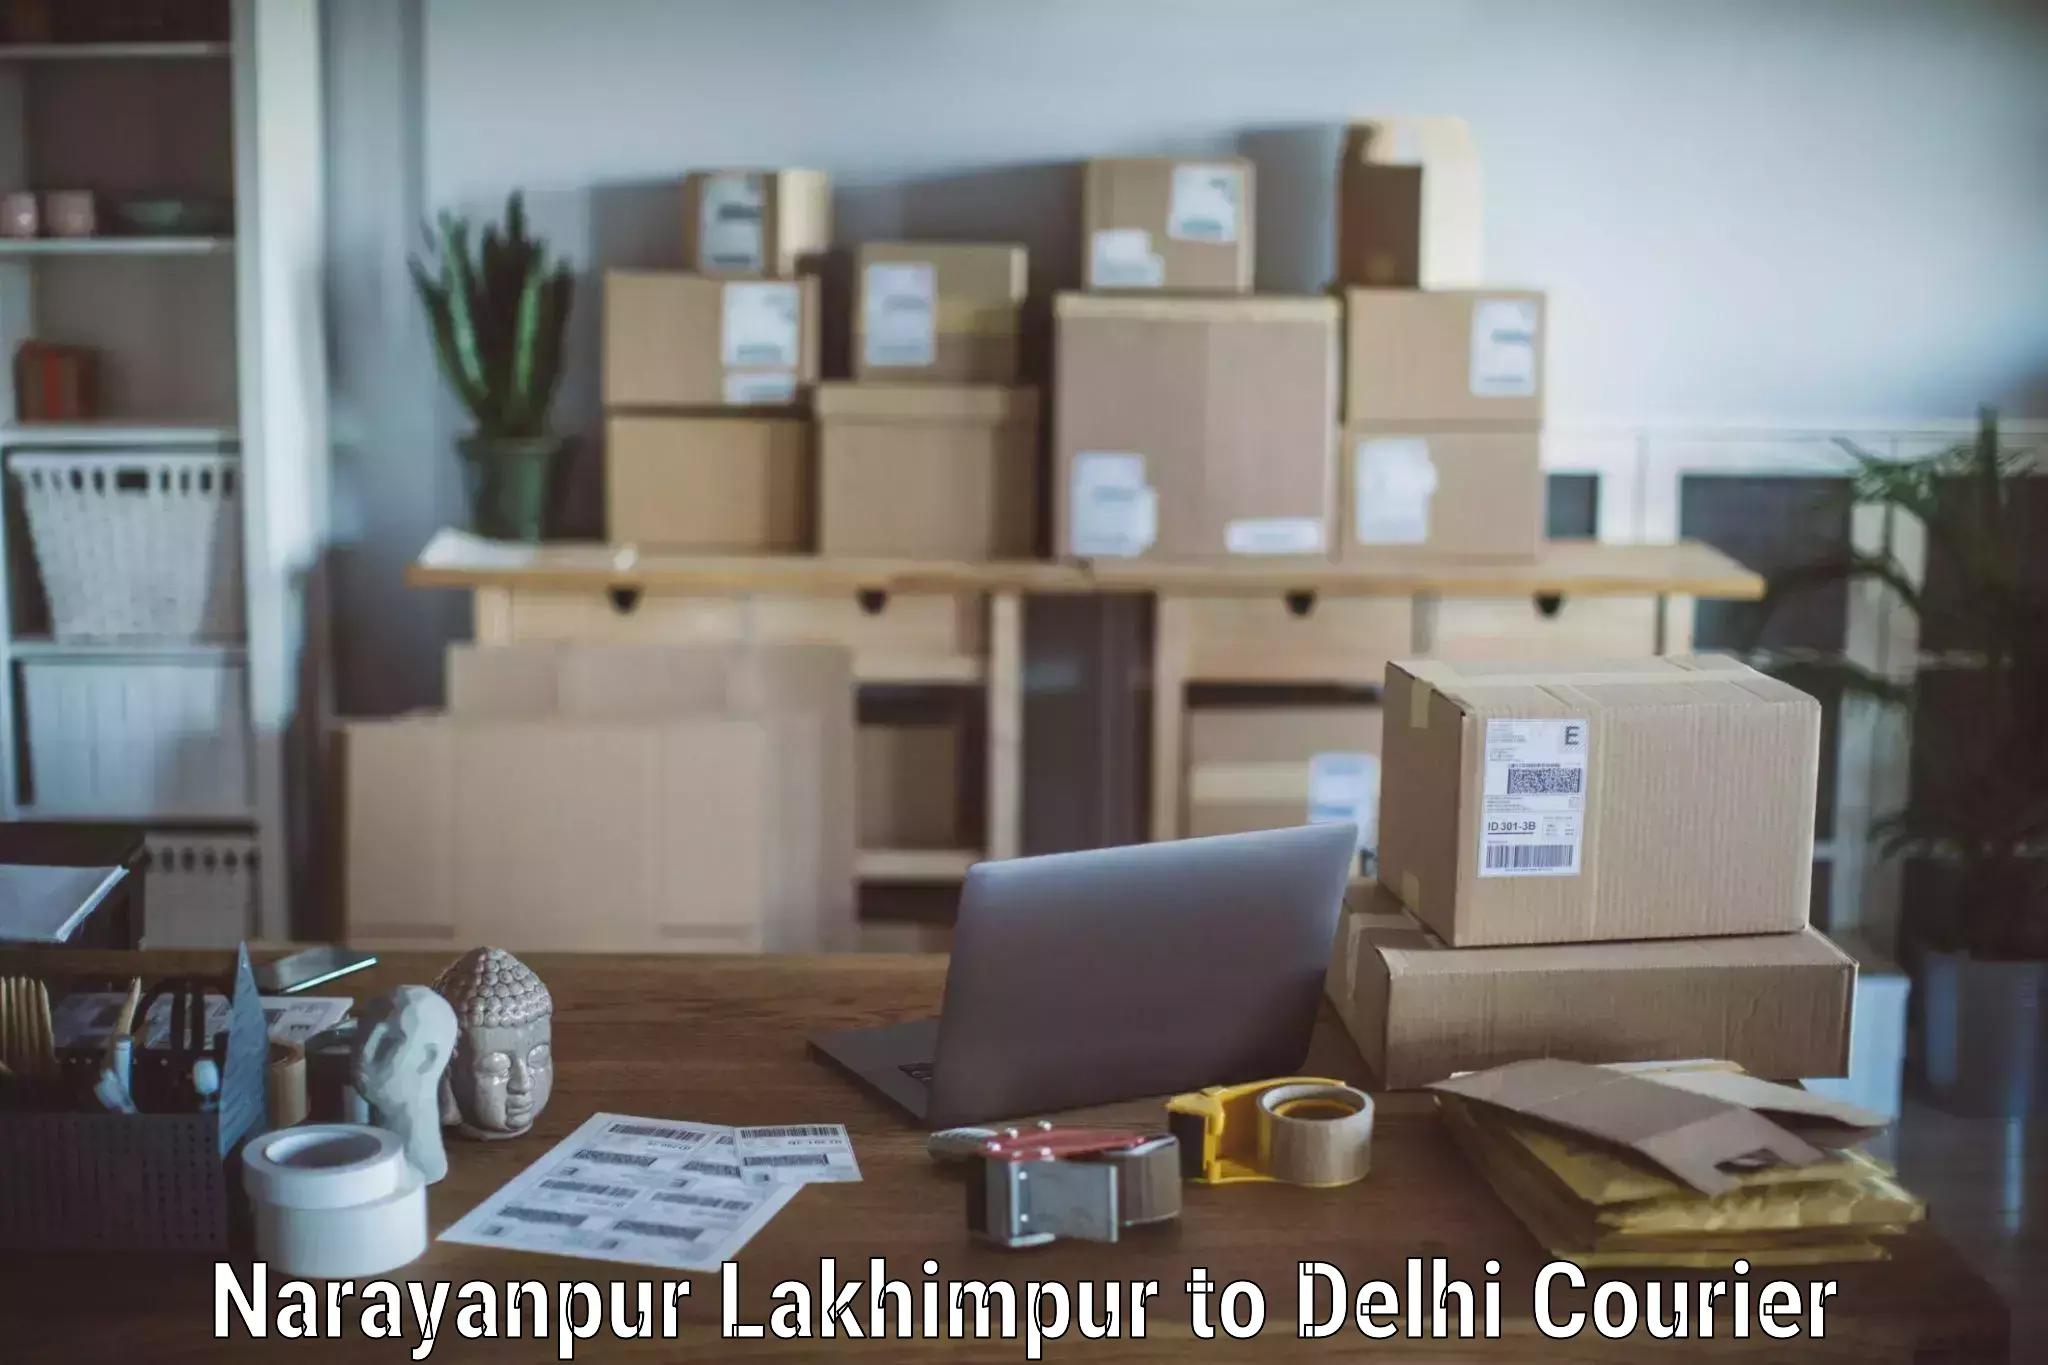 Professional moving company Narayanpur Lakhimpur to Burari